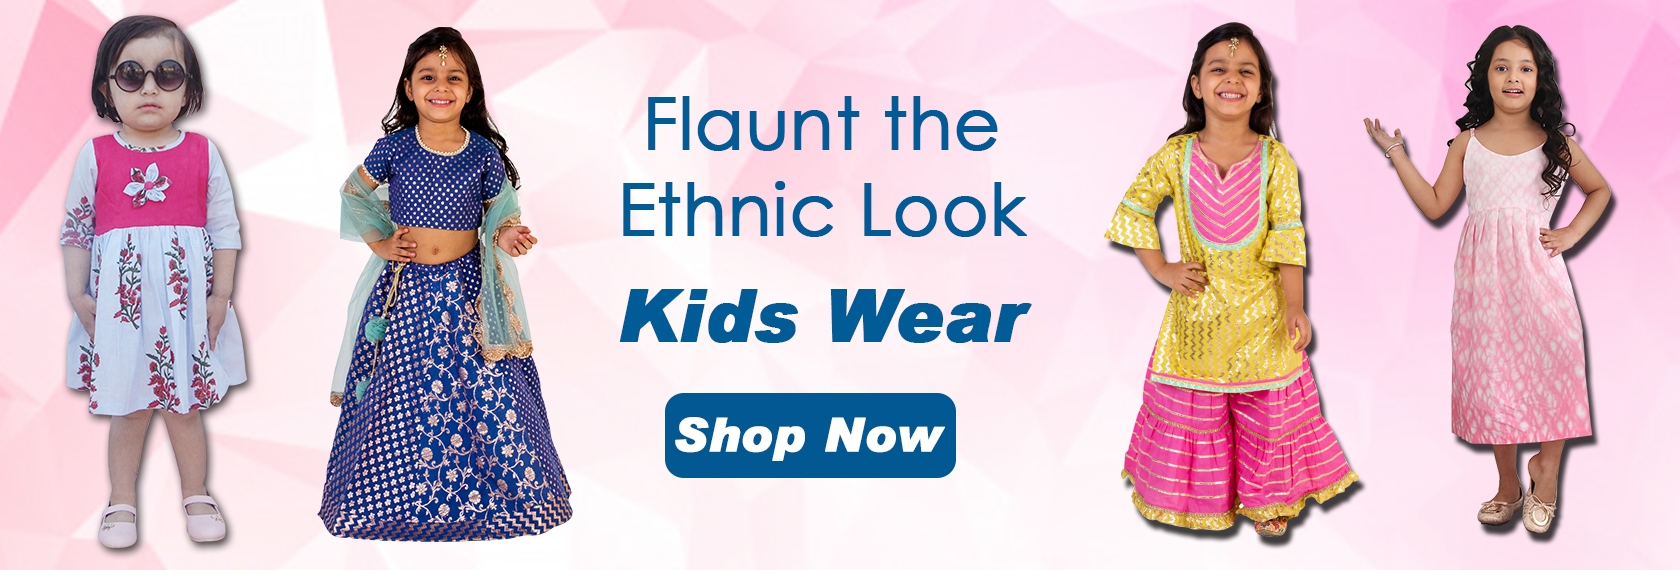 Online shopping kids dresses